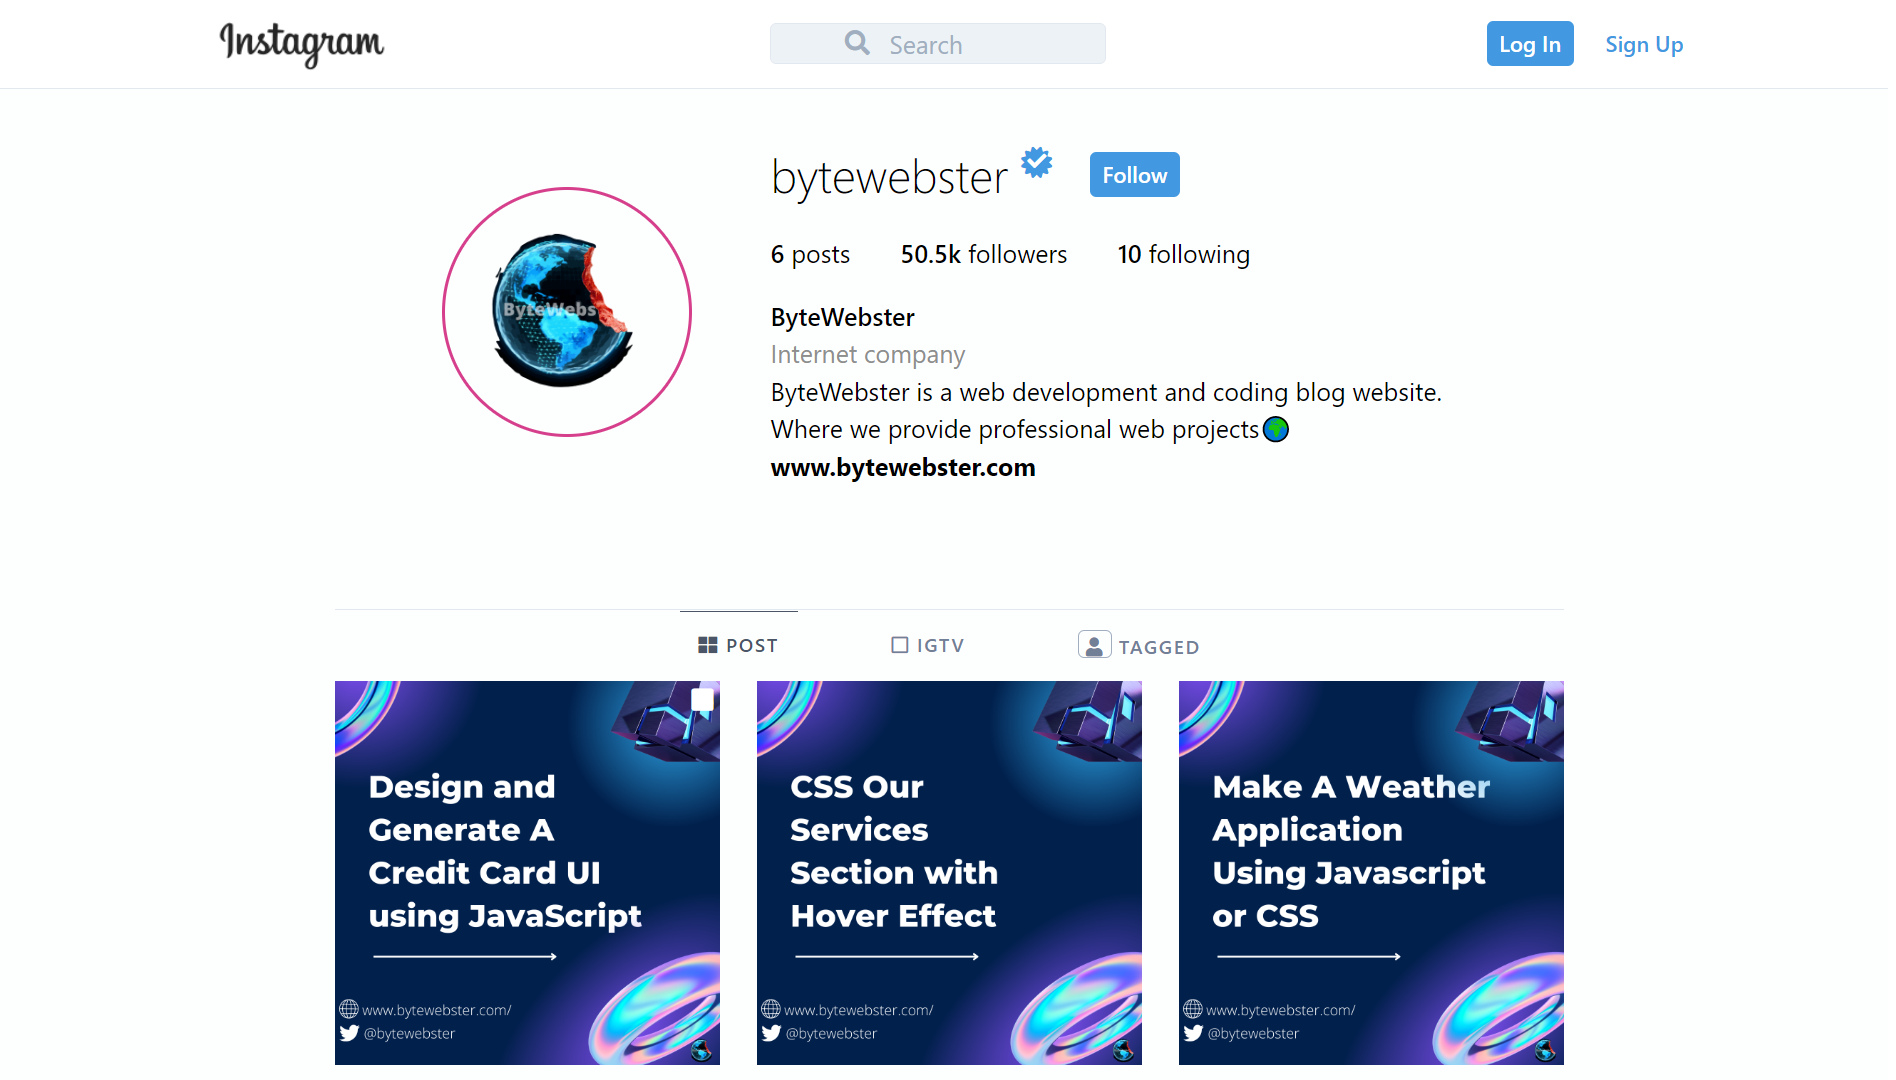 Với sự phát triển của công nghệ và hỗ trợ của ByteWebster, trang cá nhân Instagram của bạn sẽ được tối ưu hóa hoàn hảo với Tailwind CSS. Điều này giúp cho trang cá nhân của bạn trông chuyên nghiệp và dễ dàng thu hút sự chú ý của người dùng trên mạng xã hội này. Hãy ấn vào hình ảnh để xem kết quả thú vị mà mọi người đã đạt được!